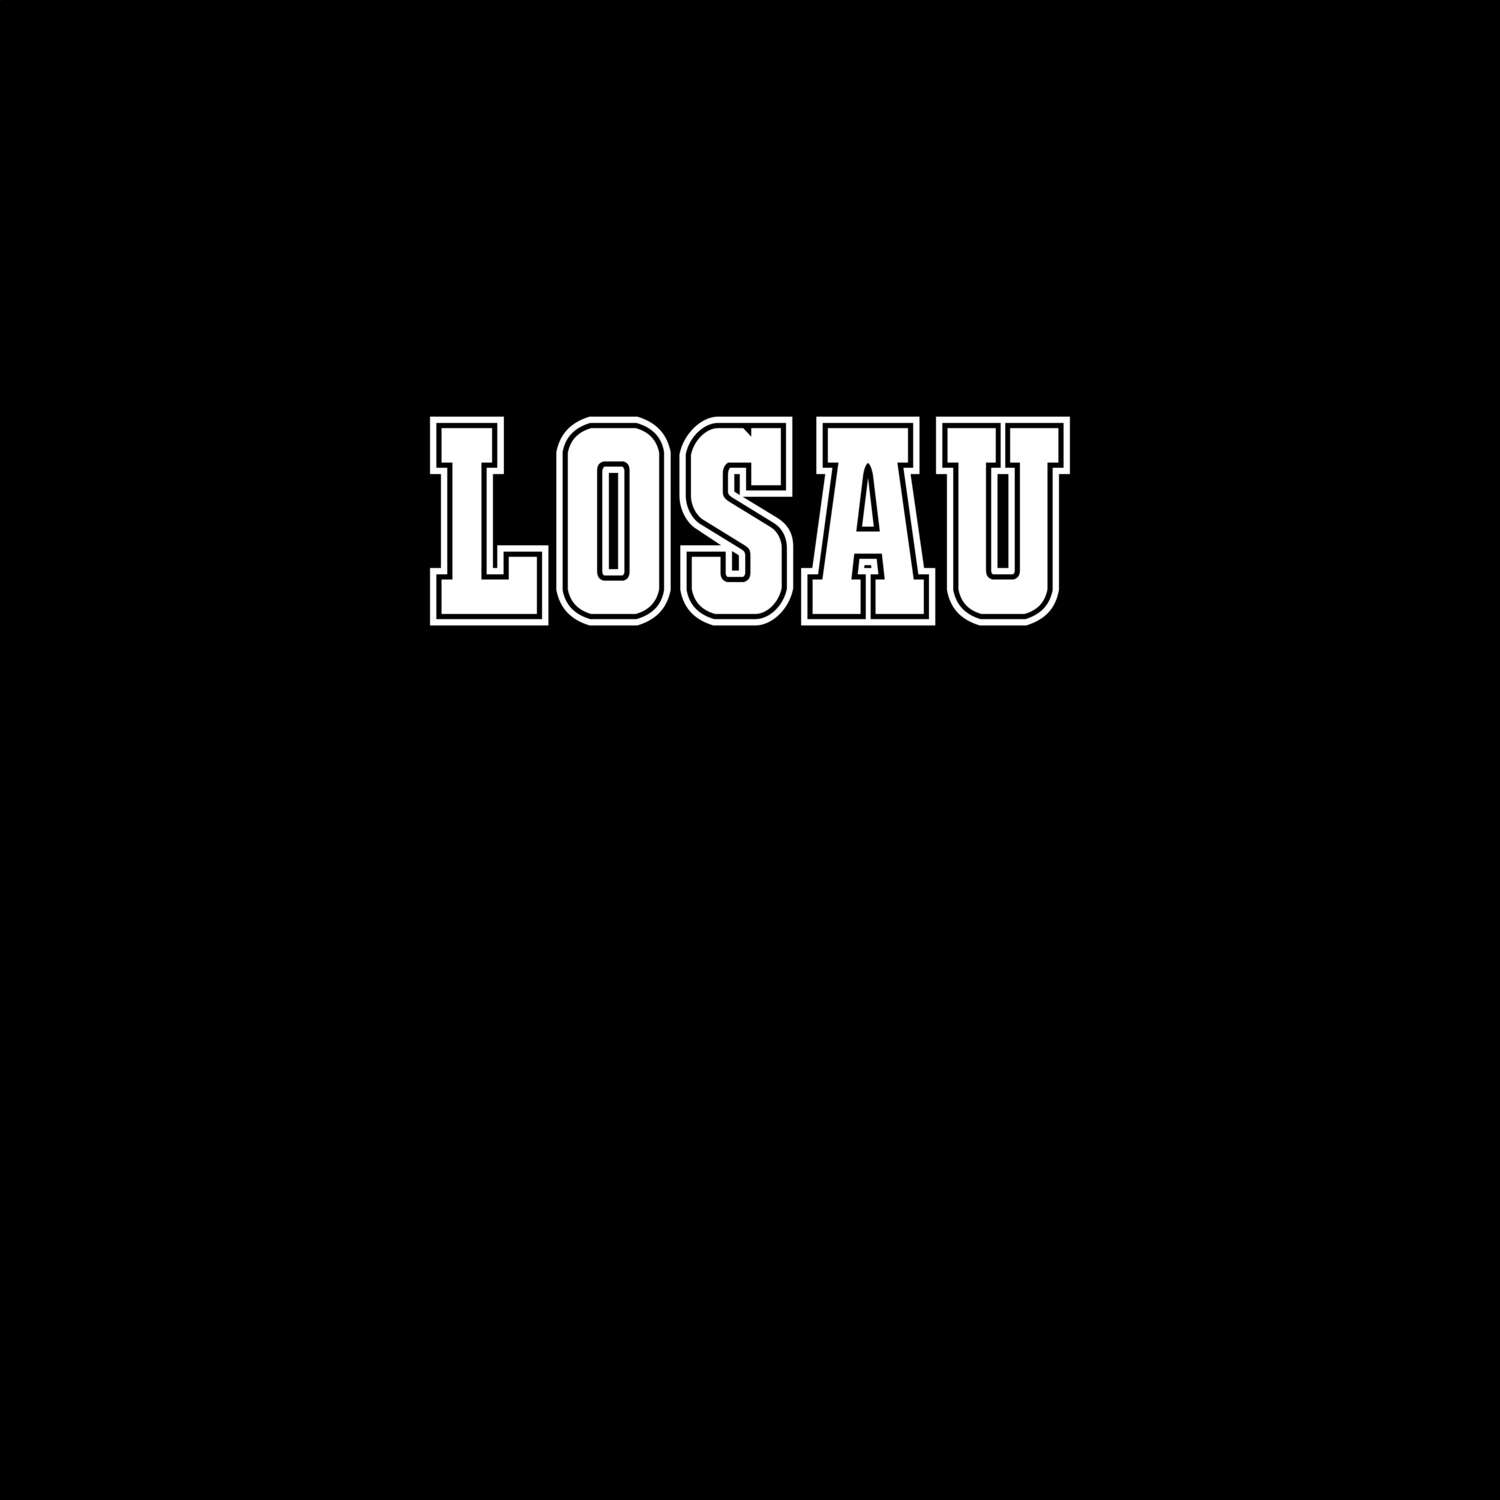 Losau T-Shirt »Classic«